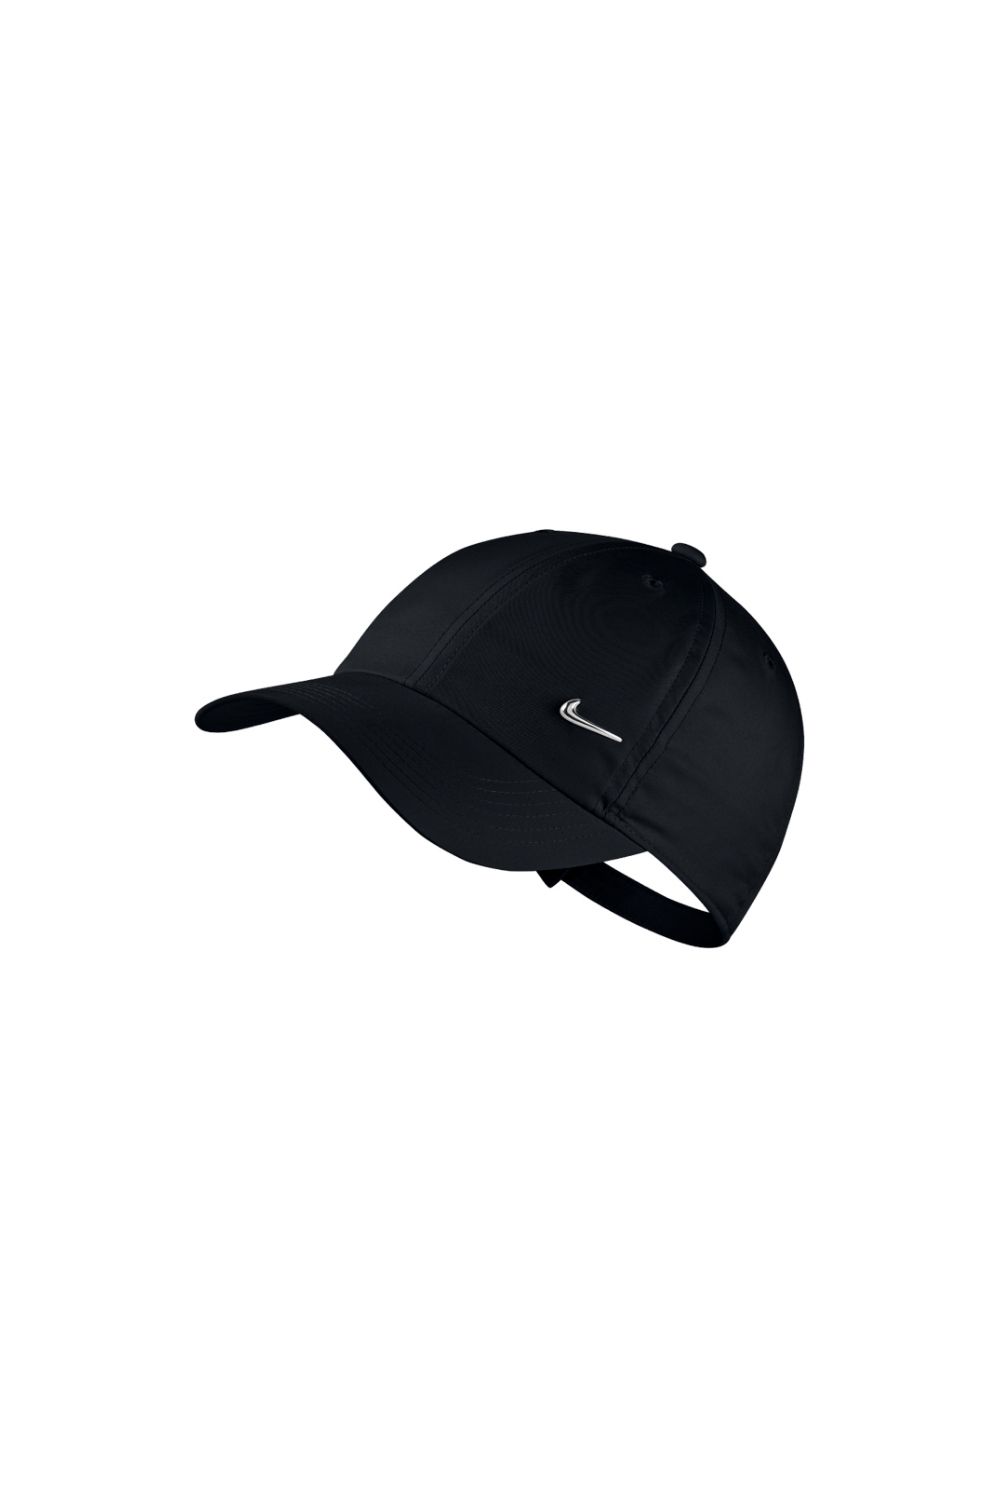 Παιδικά/Boys/Αξεσουάρ/Καπέλα NIKE - Παιδικό καπέλο Nike Heritage86 μαύρο